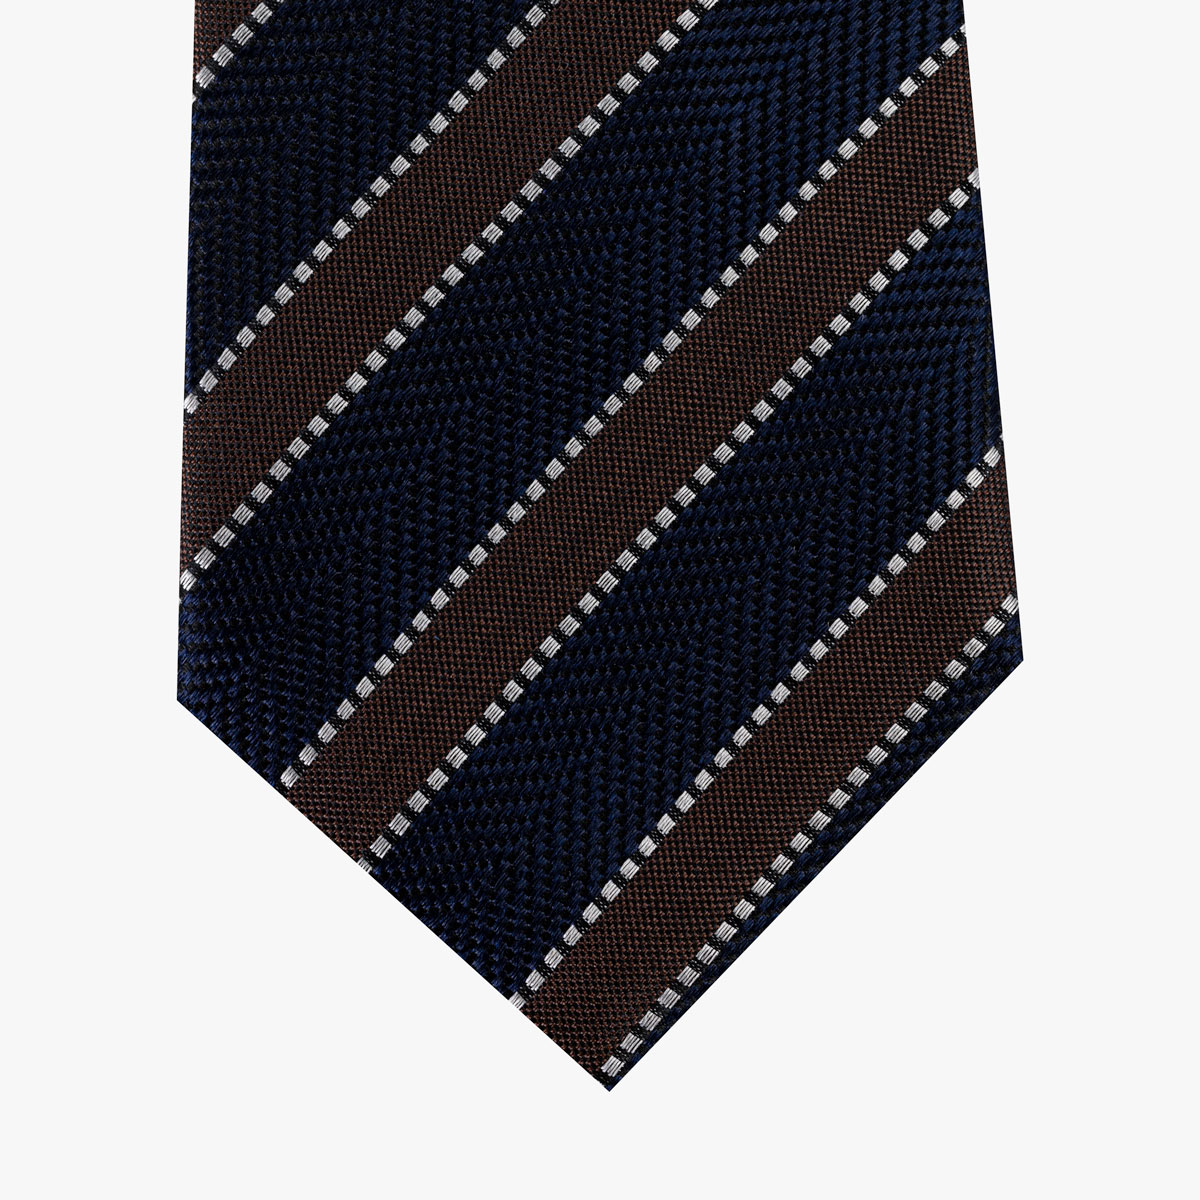 Krawatte mit Streifenmuster in braun dunkelblau